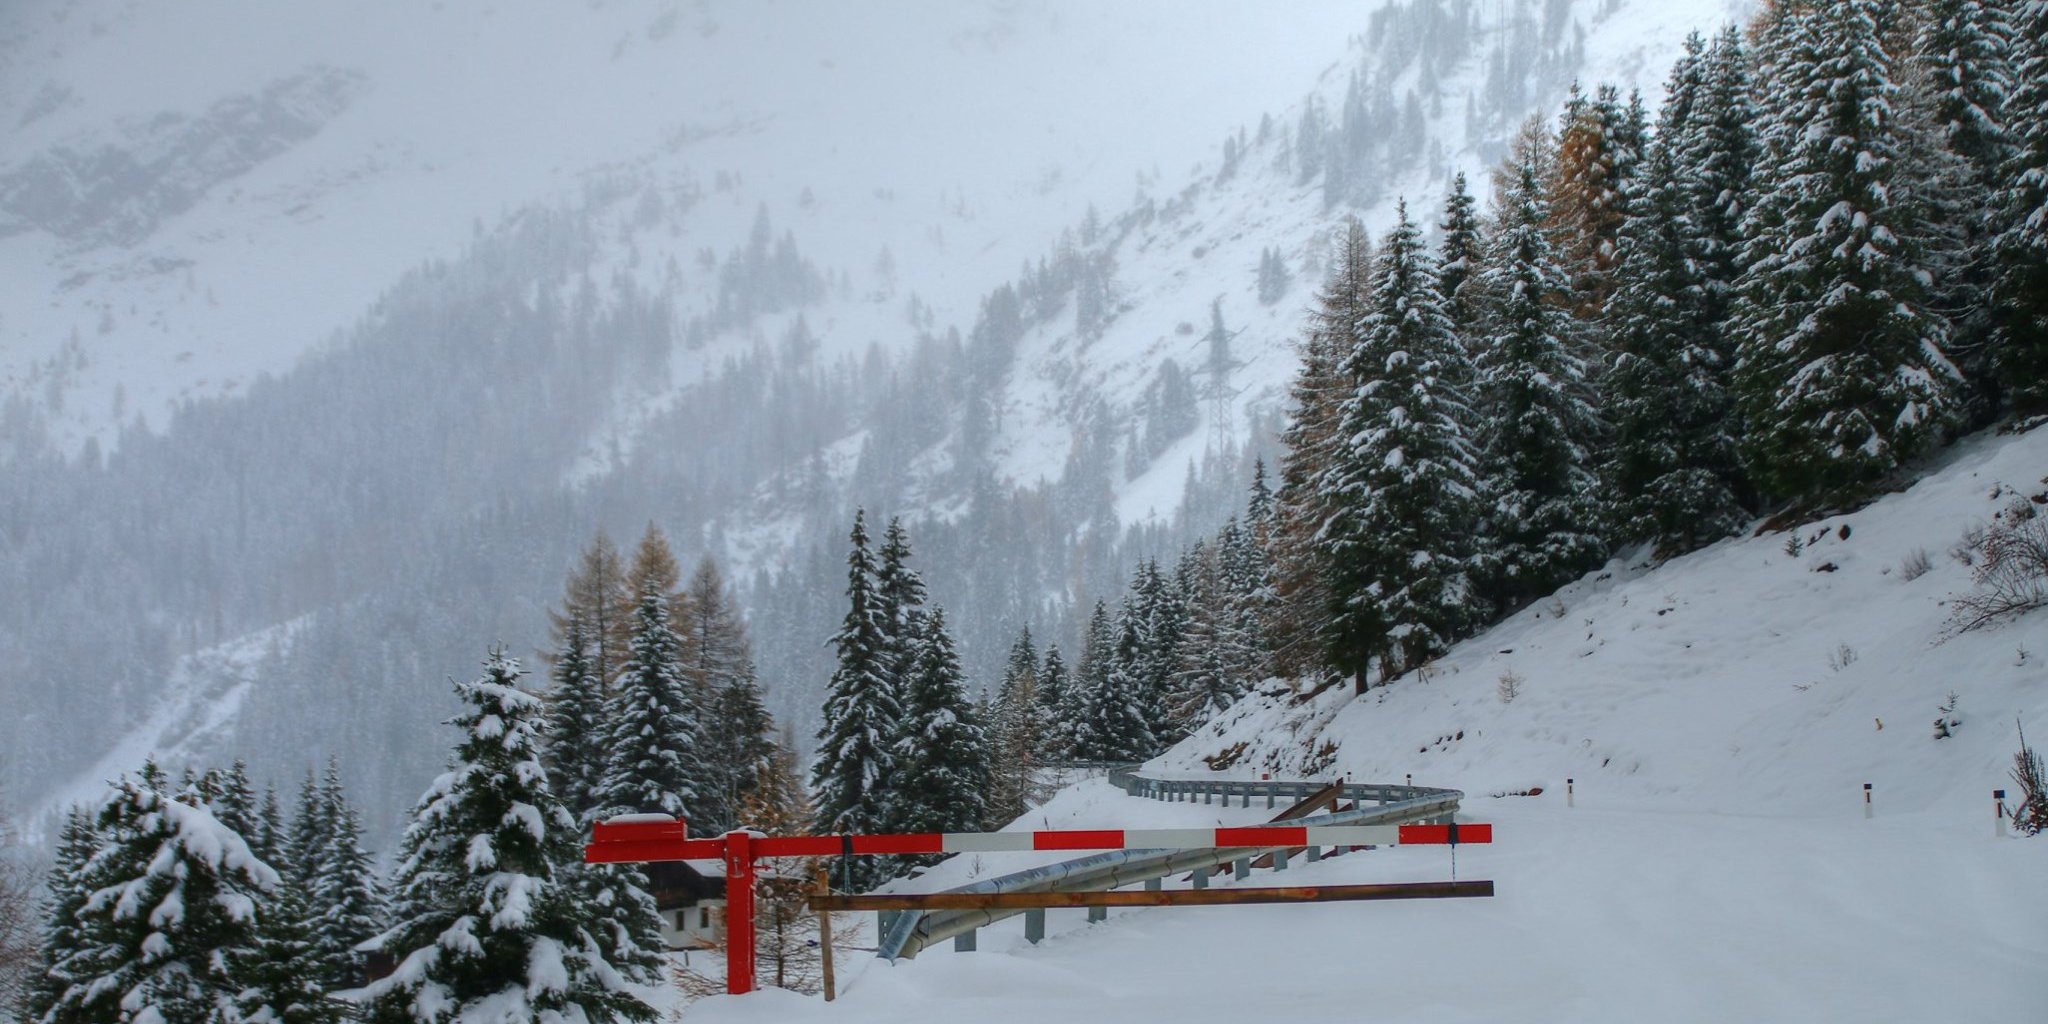 Lezárt hegyvidéki út Kelet-Tirolban kedd délután - Fotó: Stánicz Balázs (Stani)